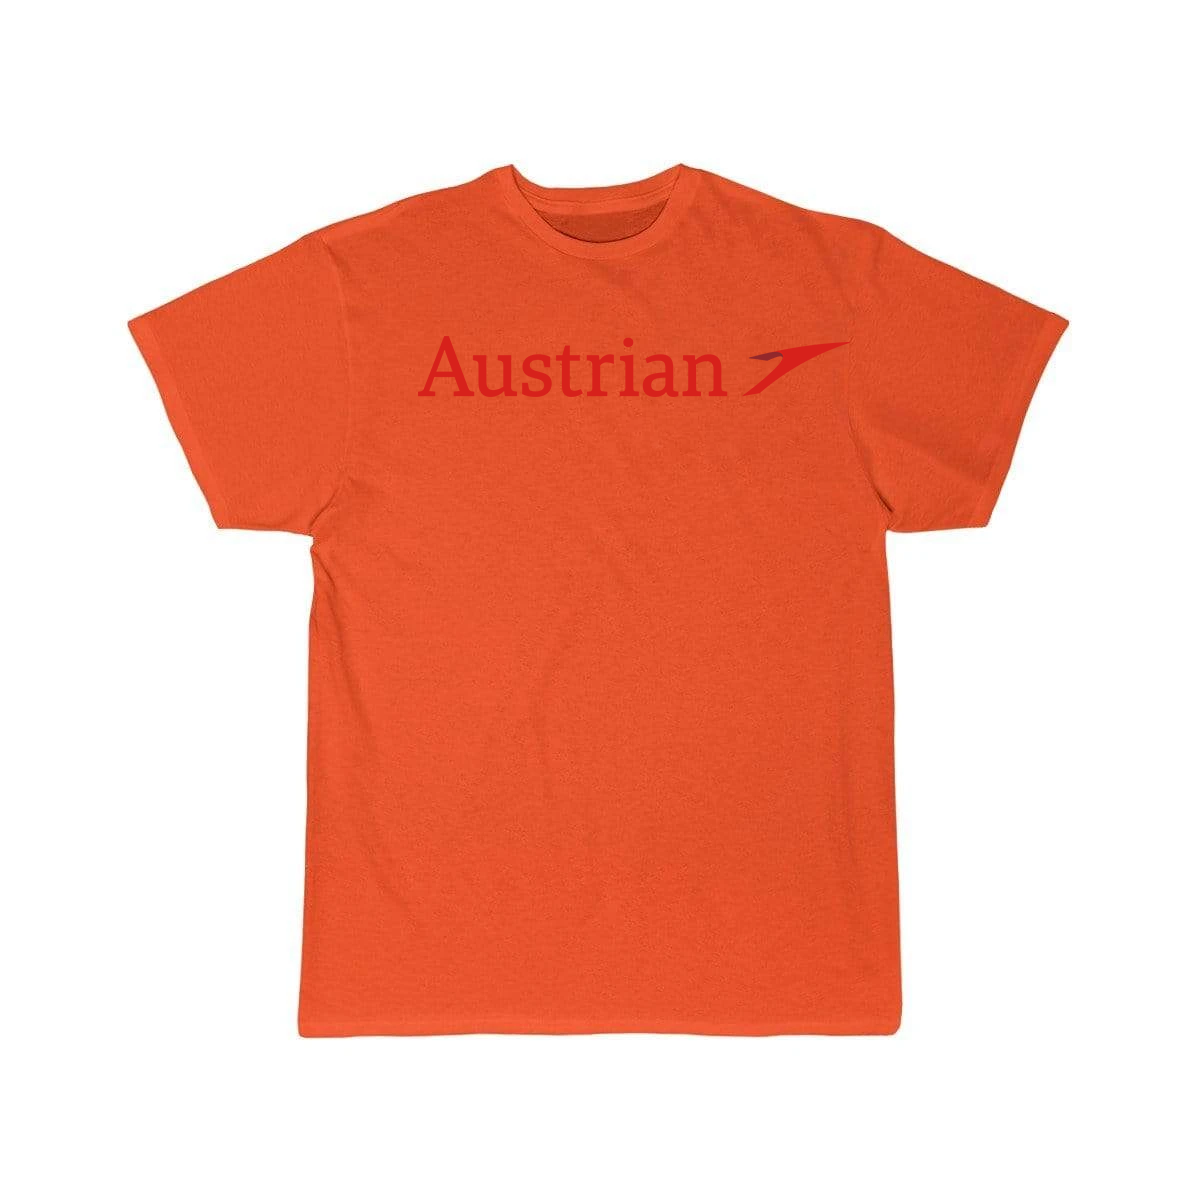 AUSTRIAN AIRLINE T-SHIRT